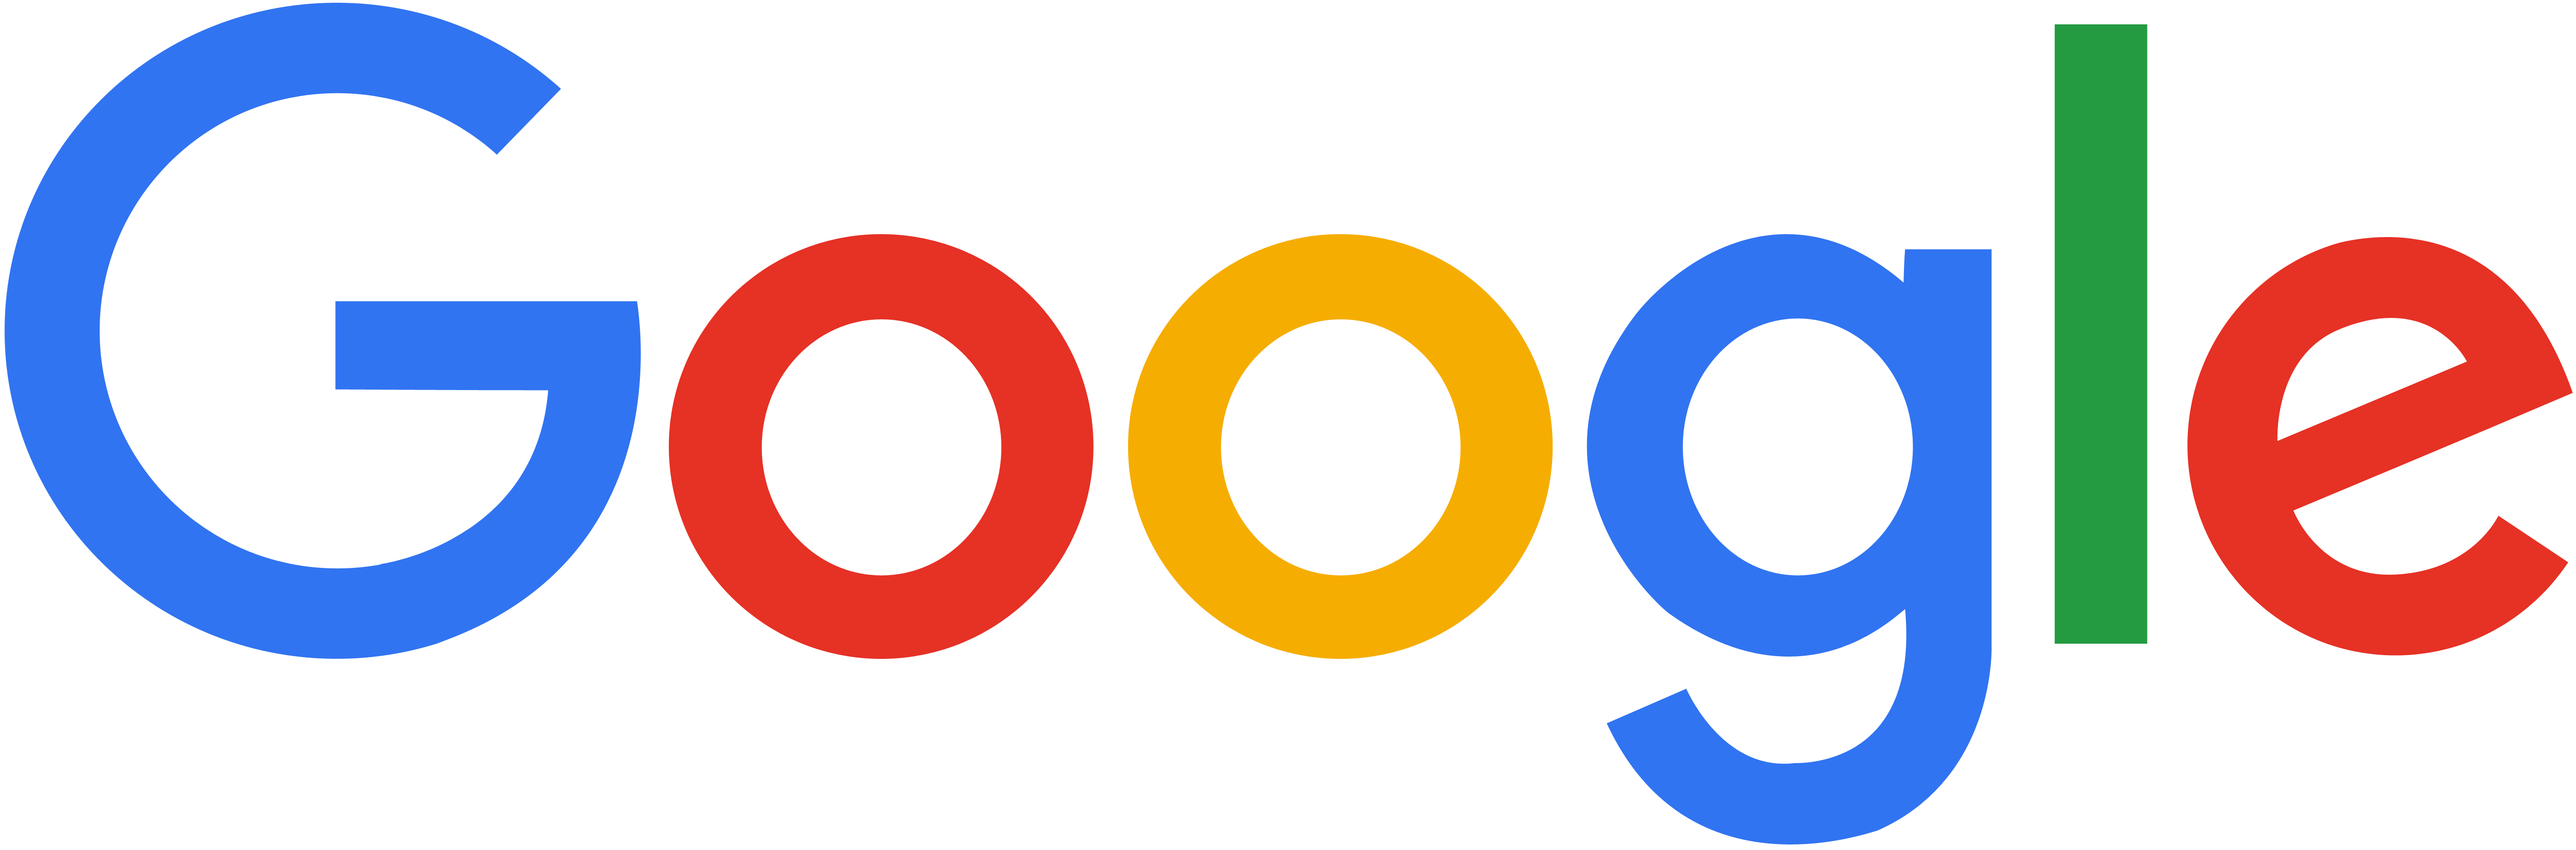 Google Logo PNG Transparent Background HD High Resolution pngteam.com